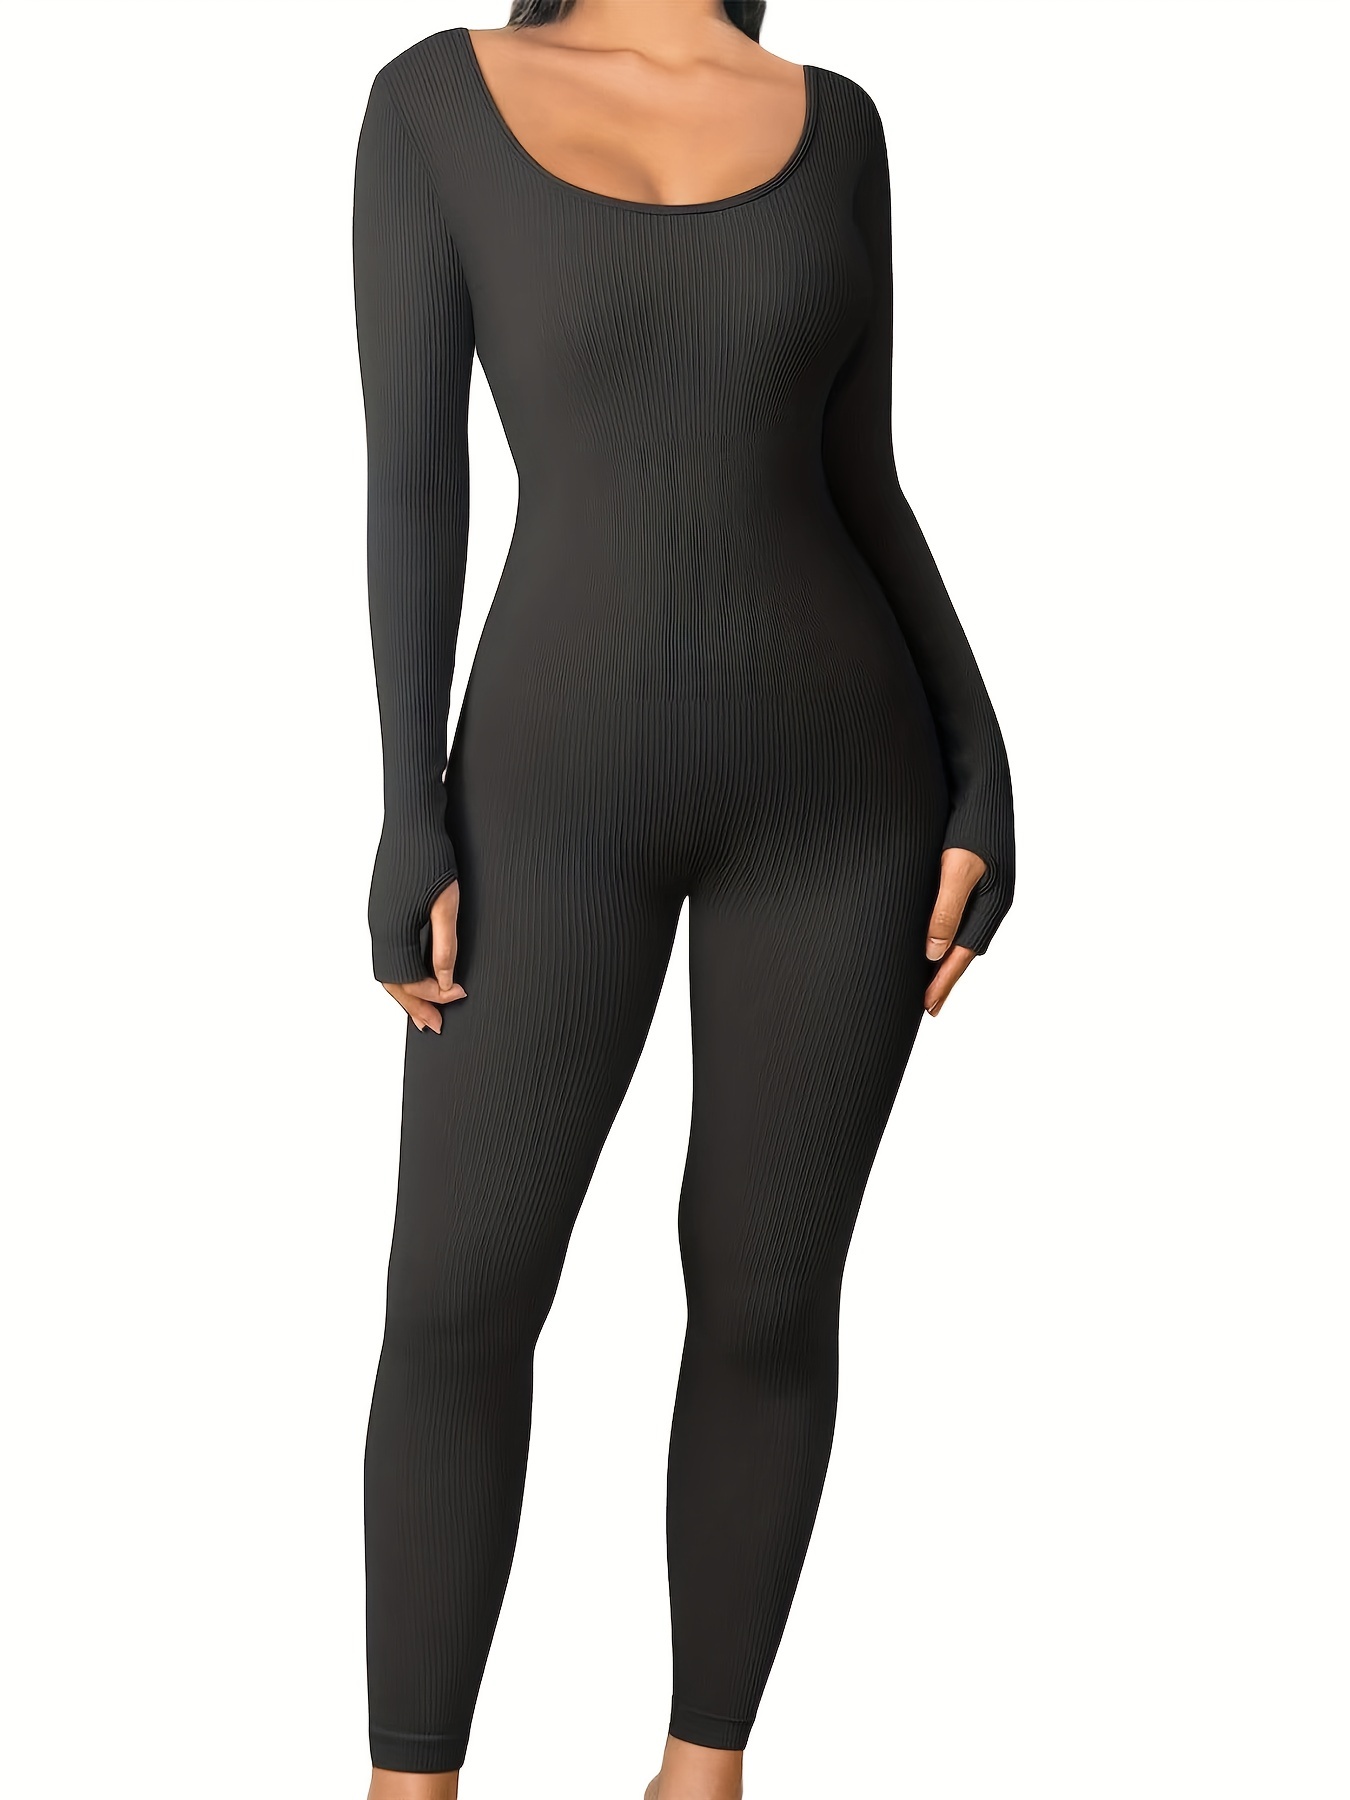 PMUYBHF Long Sleeve Black Jumpsuit Shapewear for Women Body Shaper Zipper  Open Bust Bodysuit Short Jumpsuit Black Romper Long Sleeve Tummy Control 